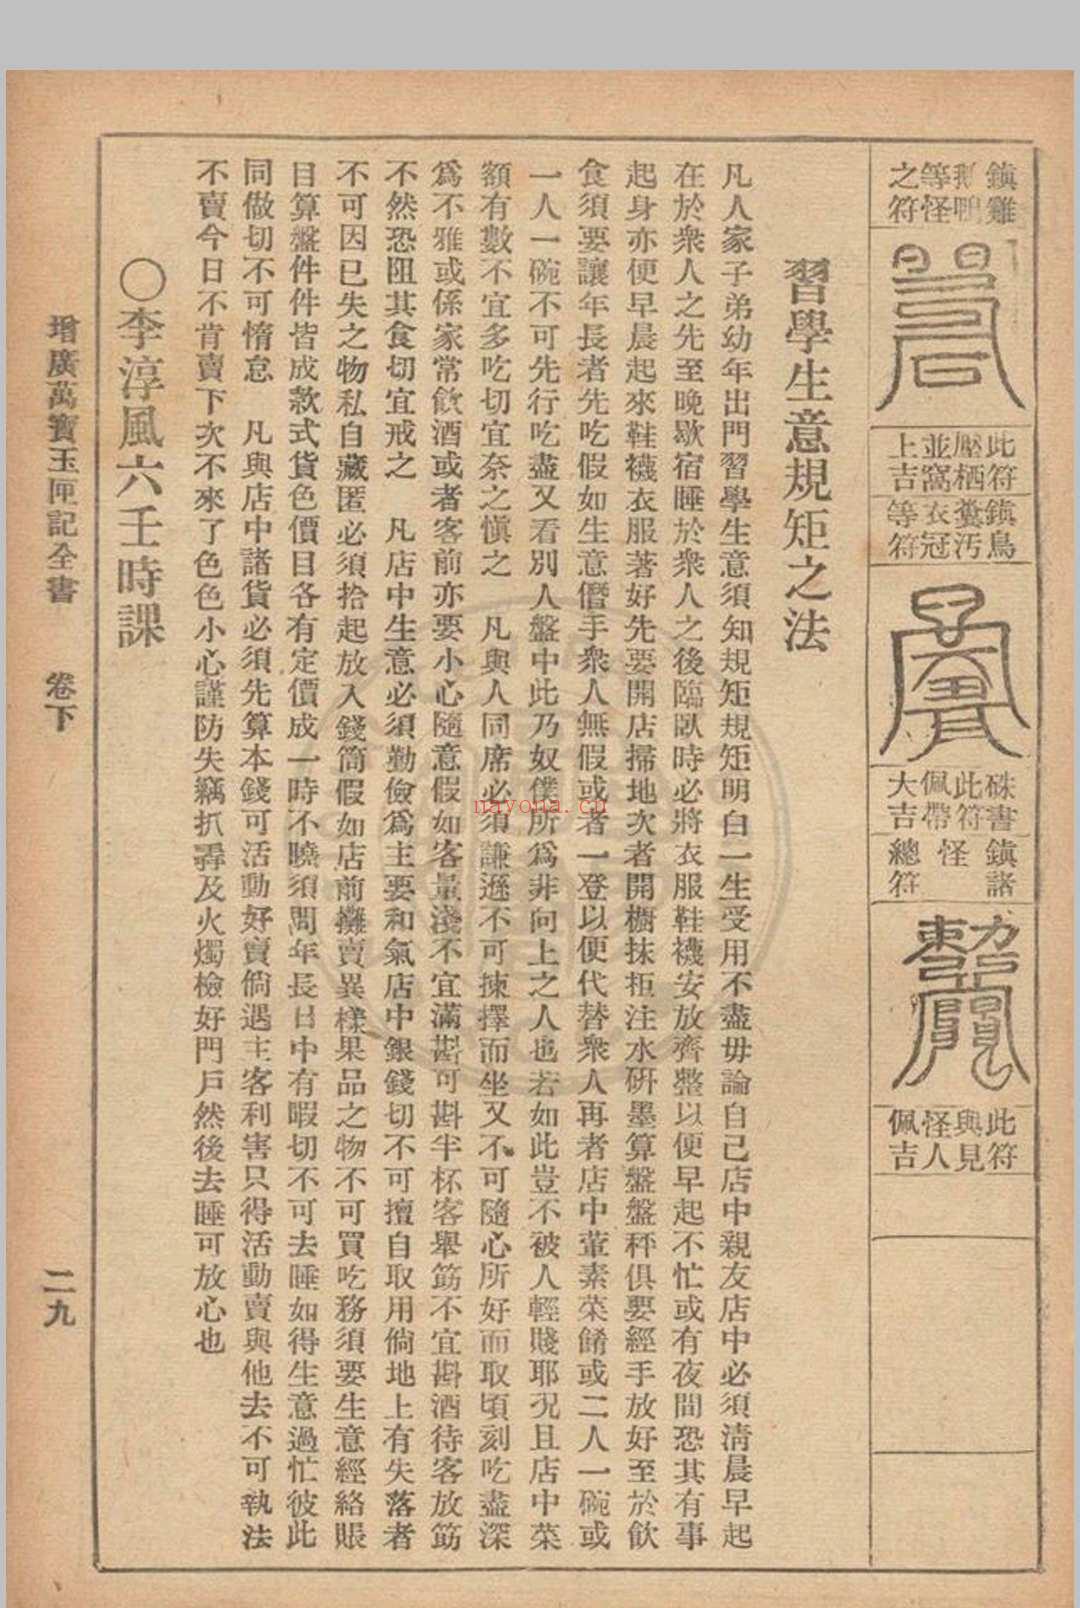 增广玉匣记 星相研究社编着 1947年 春明书店